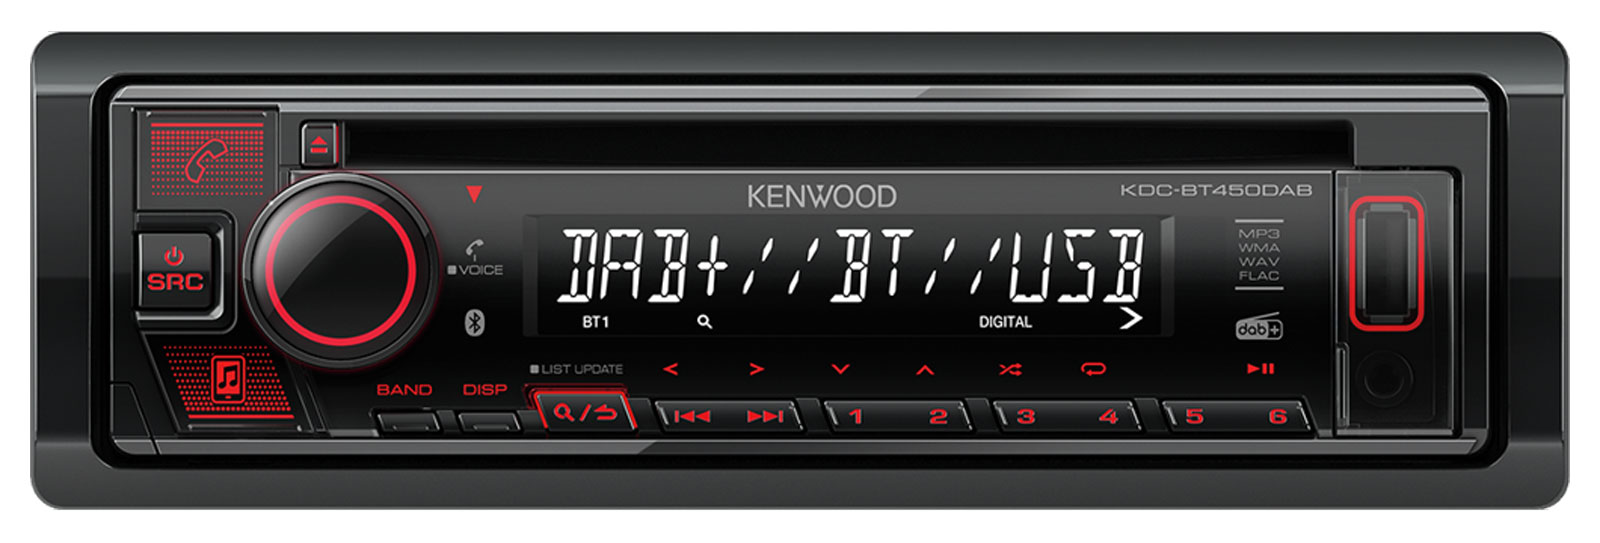 Kenwood KDC-BT450DAB - CD/MP3-Autoradio mit DAB / Bluetooth / USB / AUX-IN